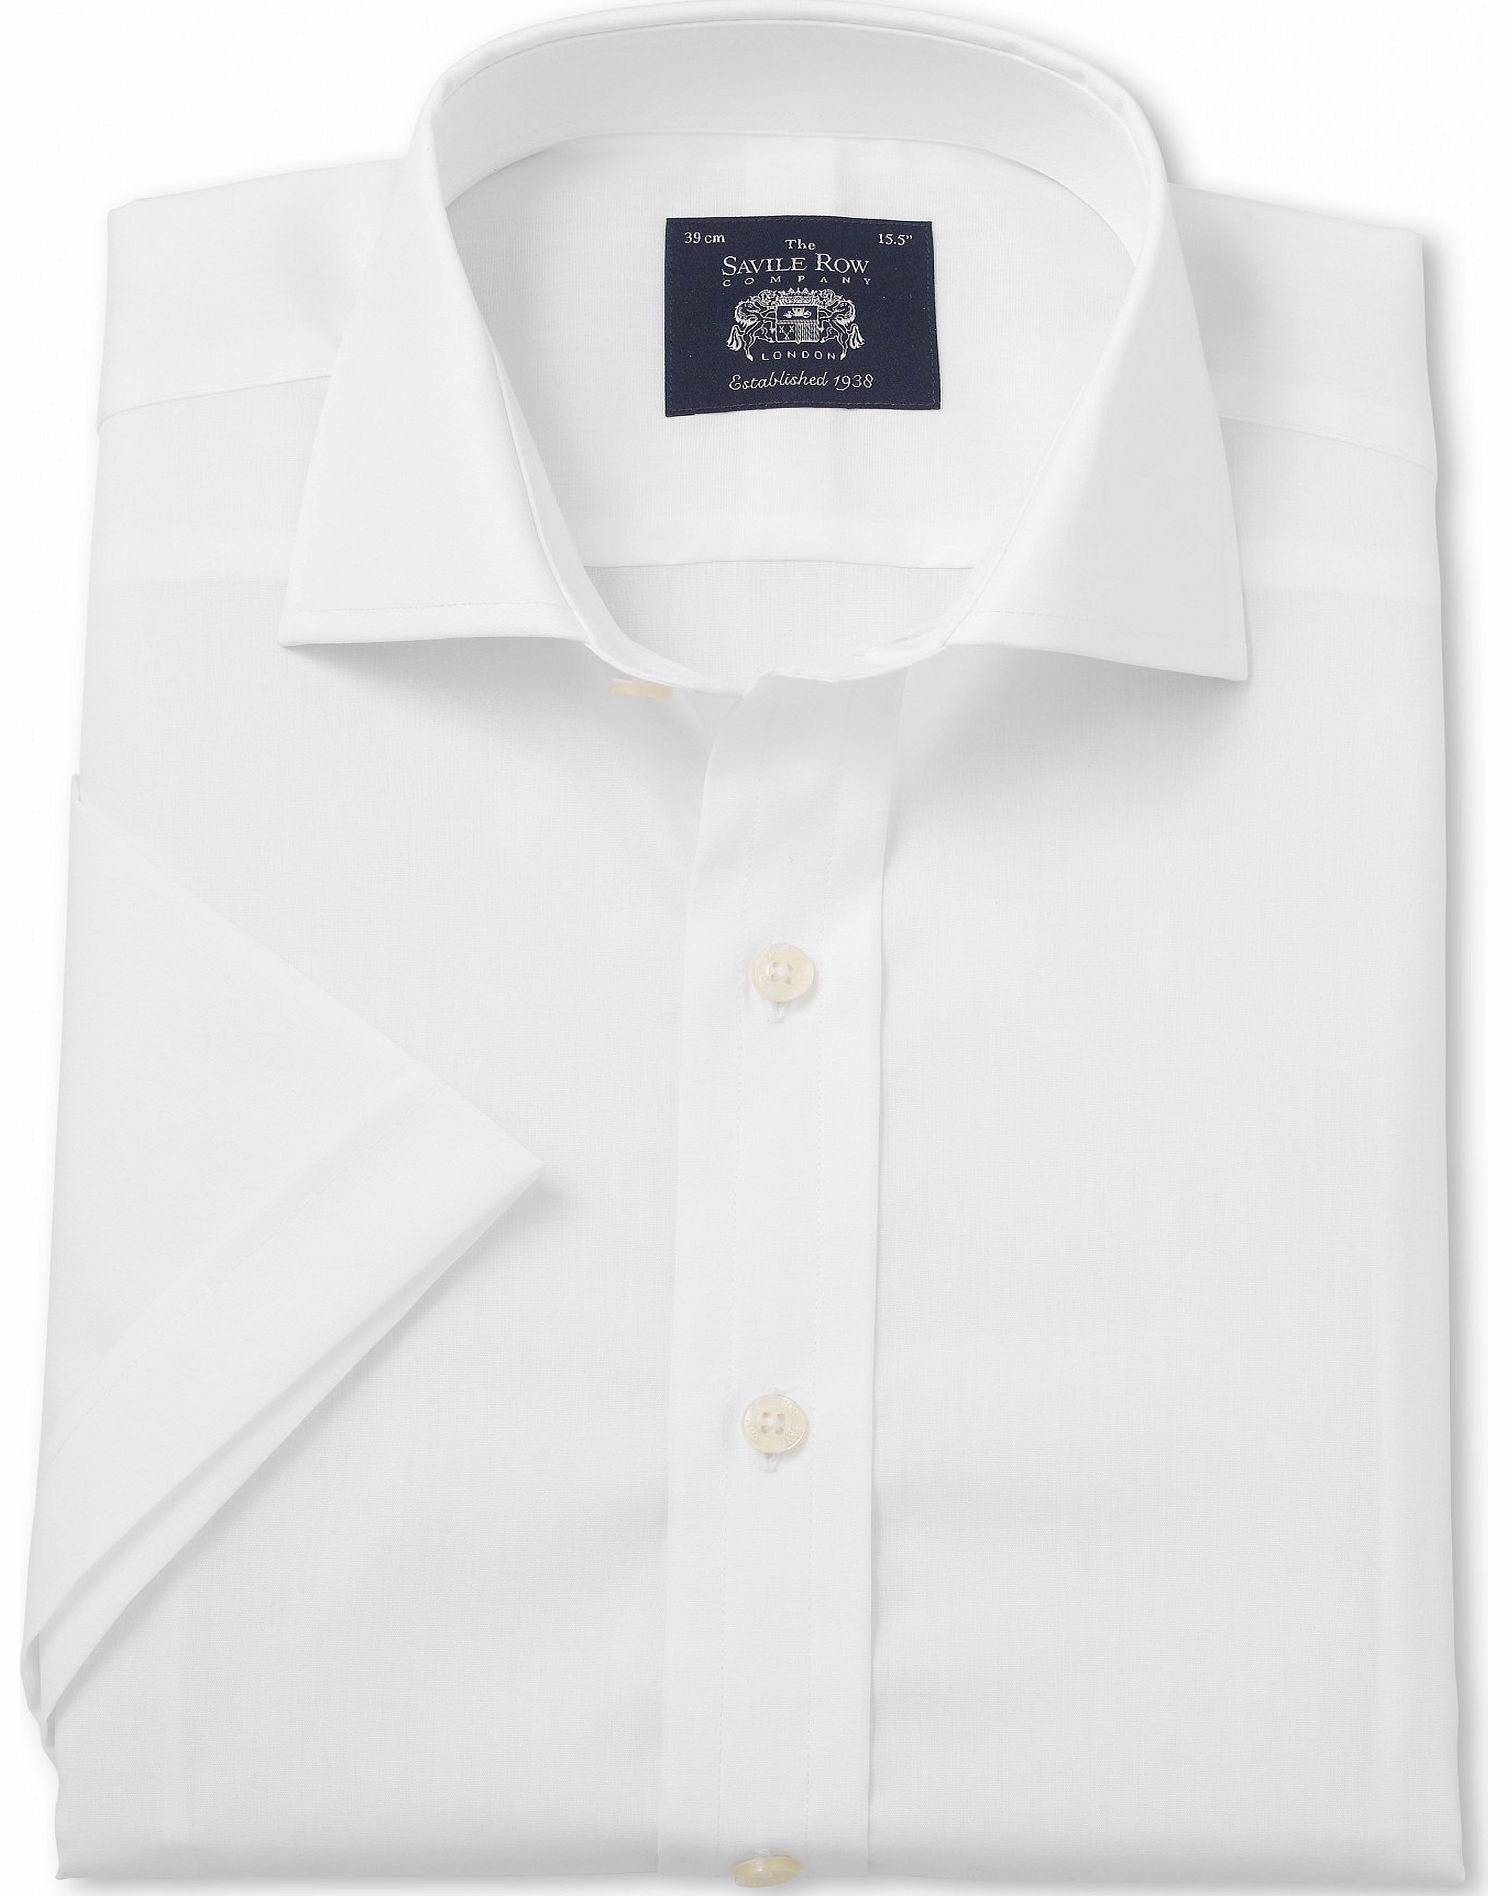 White Slim Fit Short Sleeve Shirt 16 1/2`` Short